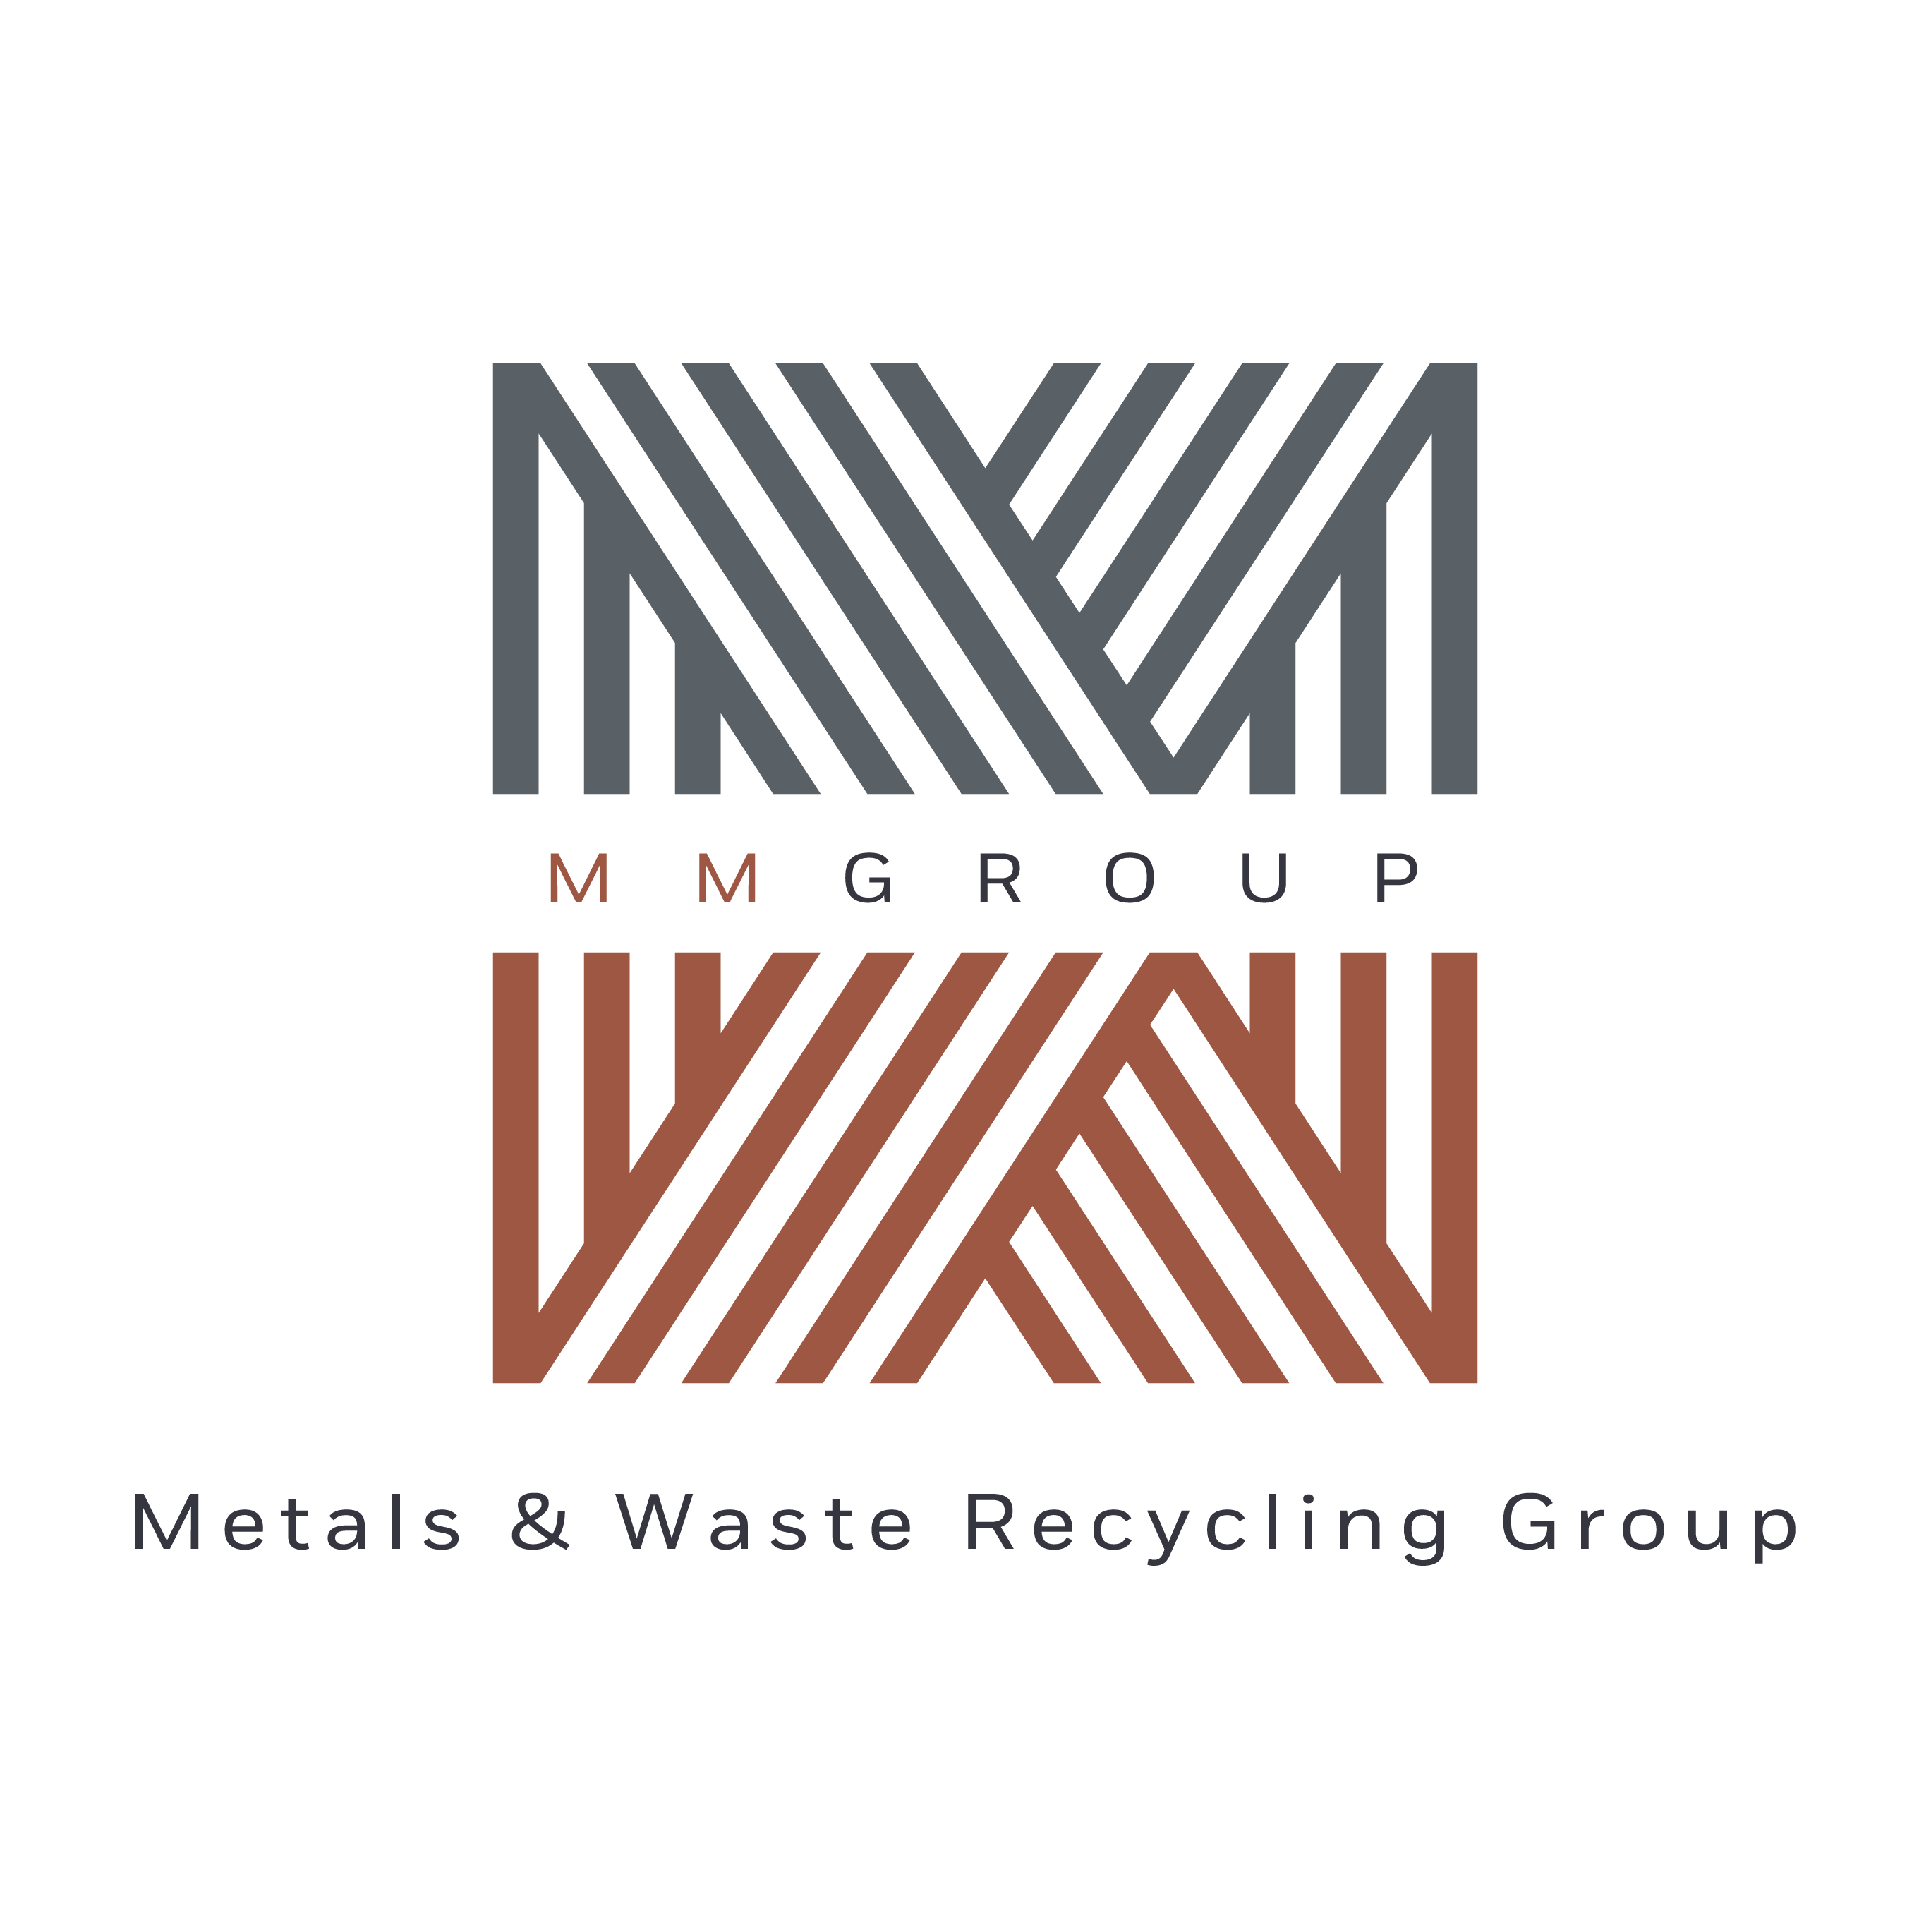 Marsden Metals Group Ltd